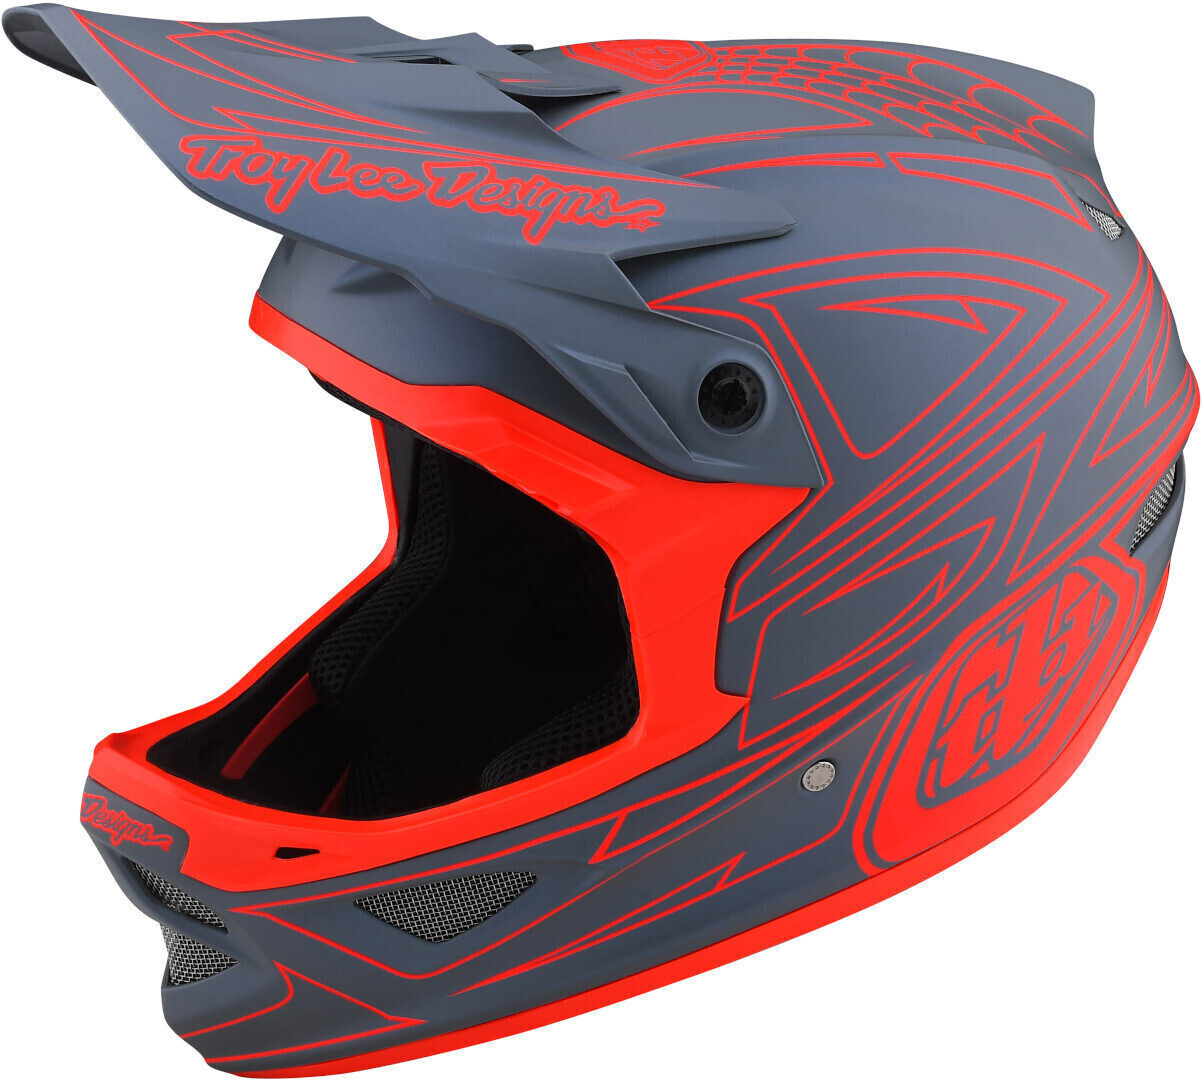 Photos - Bike Helmet TLD Troy Lee Designs Troy Lee Designs D3 Fiberlite Helmet-Factory red/grey 